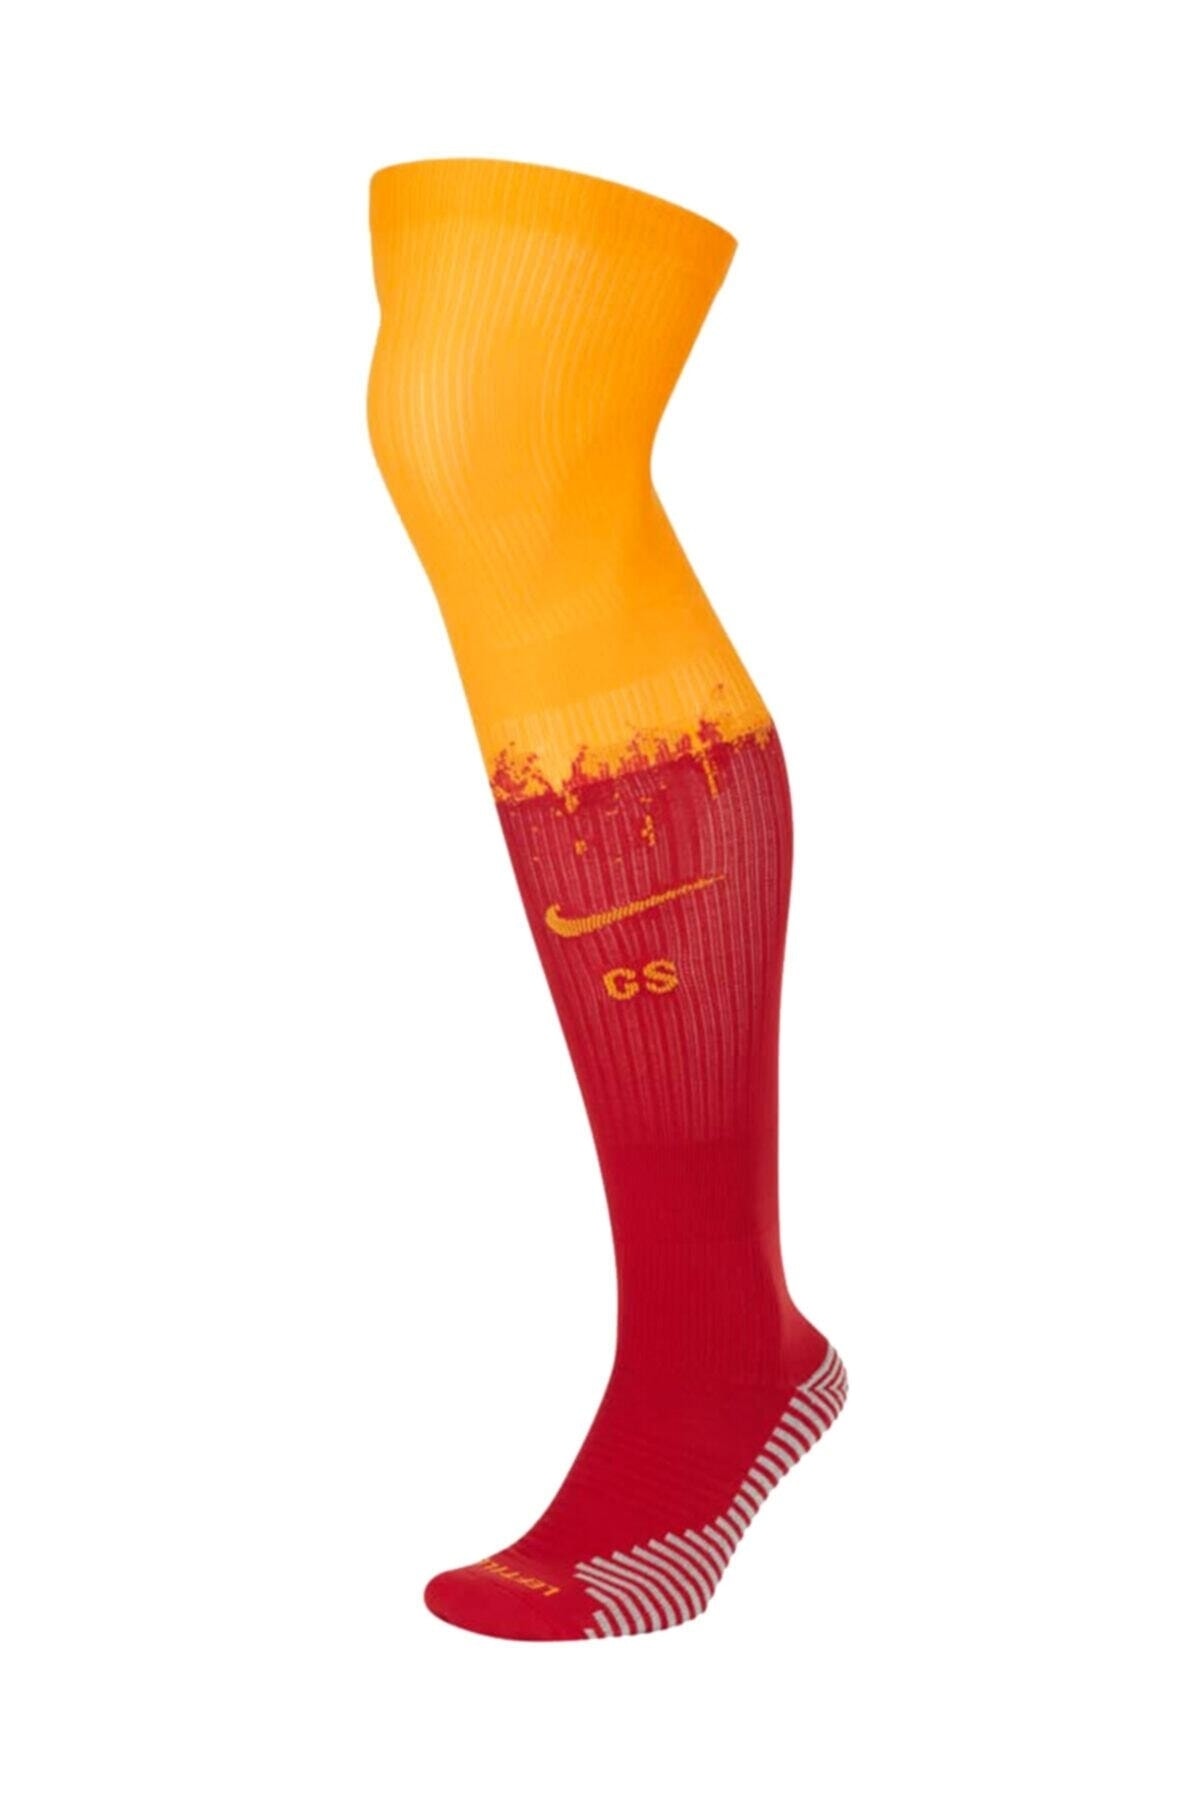 Nike Galatasaray Iç Saha Futbol Çorap